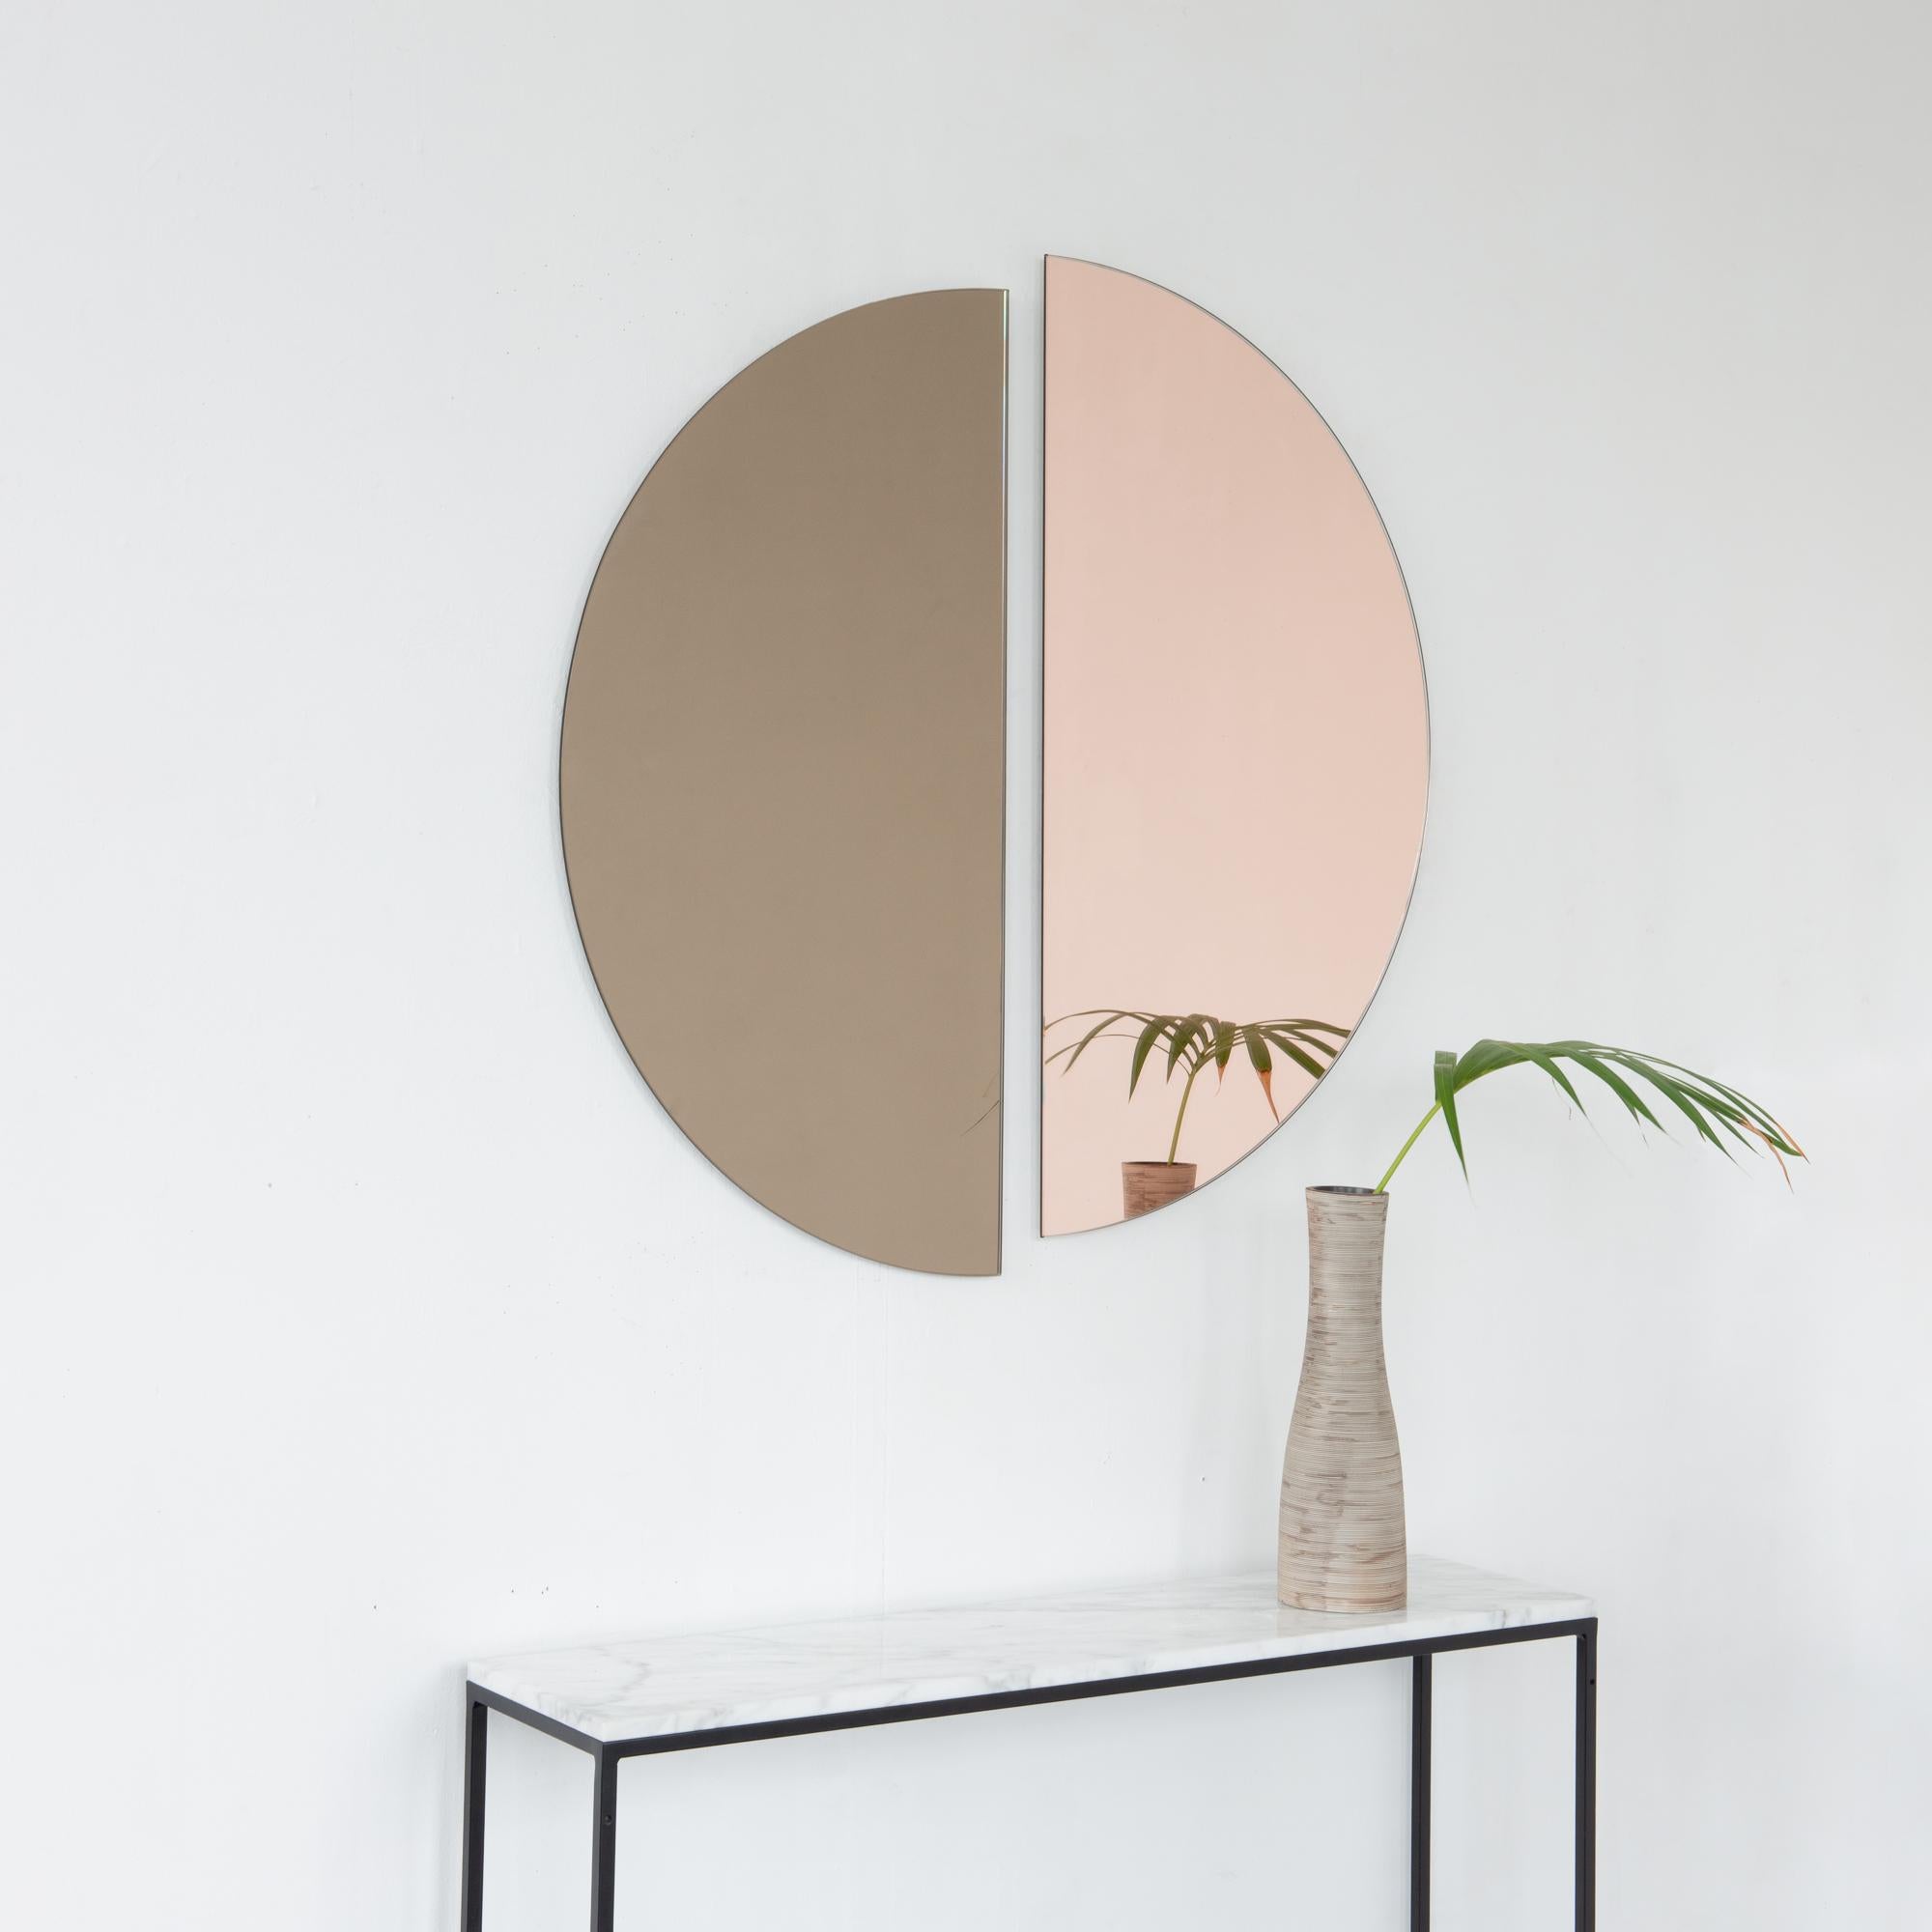 Set aus zwei minimalistischen halbmondförmigen Luna™-Spiegeln in Bronze und Roségold (Pfirsich) mit Schwebeeffekt. Ausgestattet mit einem hochwertigen und ausgeklügelten Aufhängesystem für eine flexible Installation in 4 verschiedenen Richtungen.